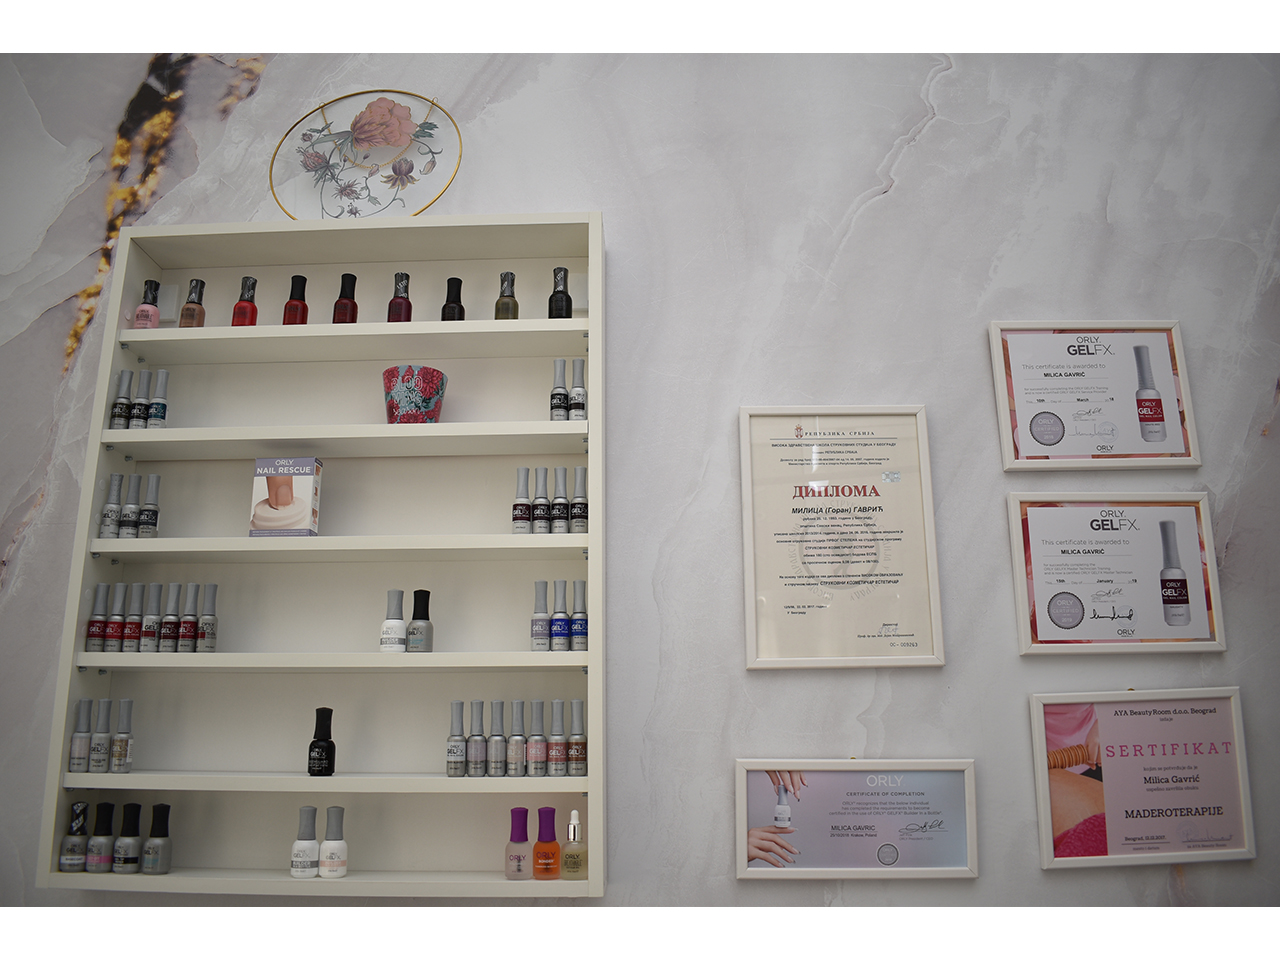 ALMI BEAUTY CONCEPT Cosmetics salons Beograd